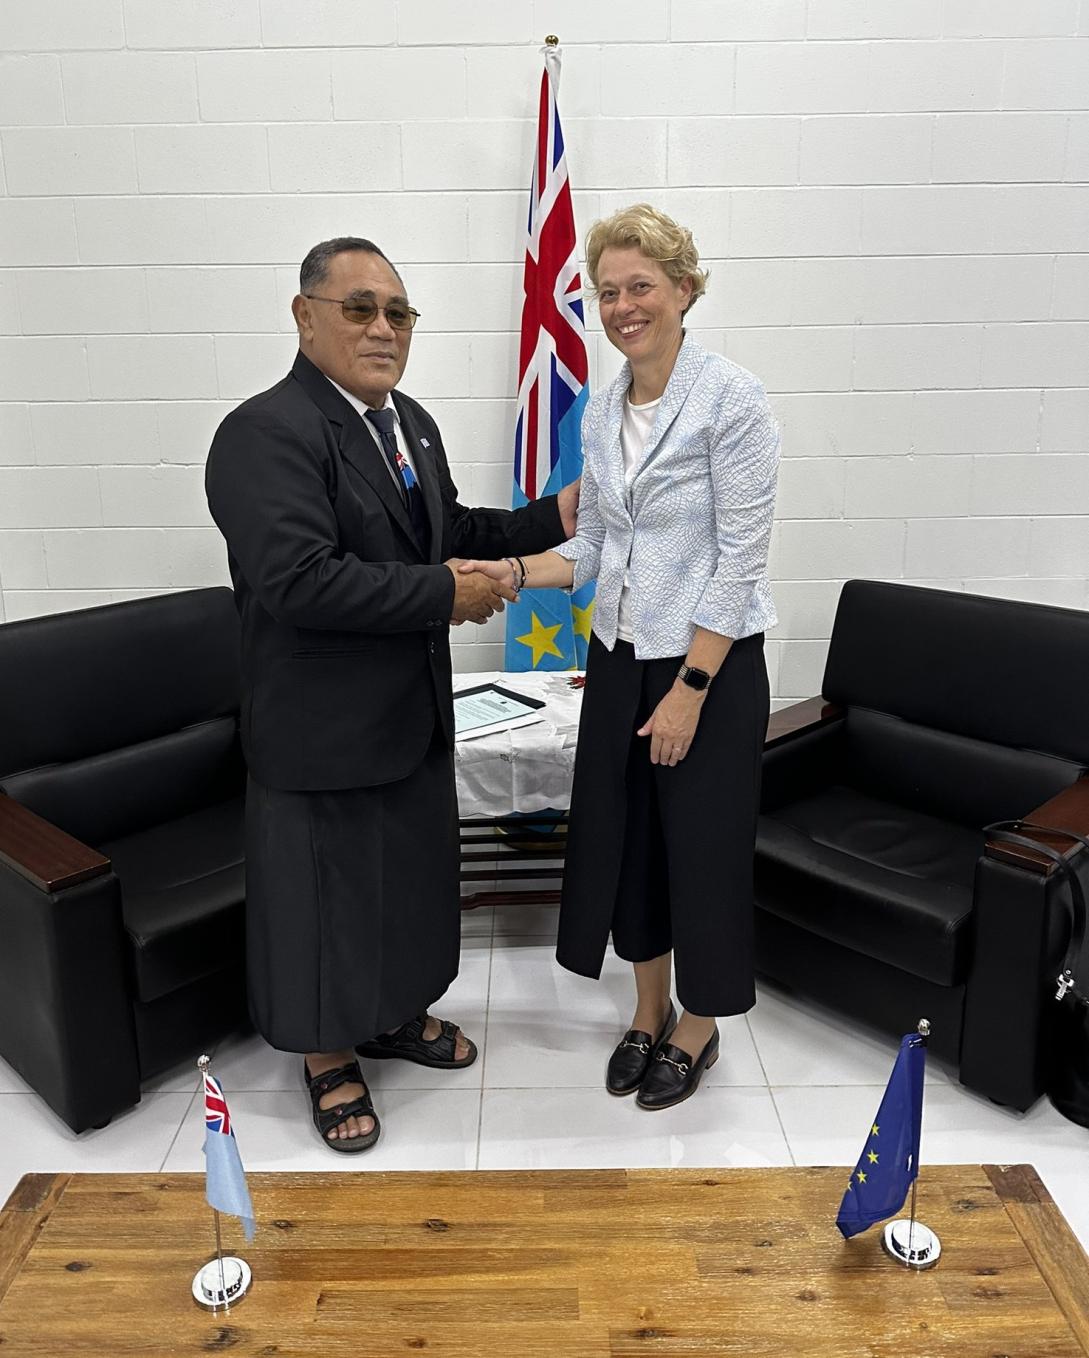  New EU Ambassador to Tuvalu Presents his Credentials